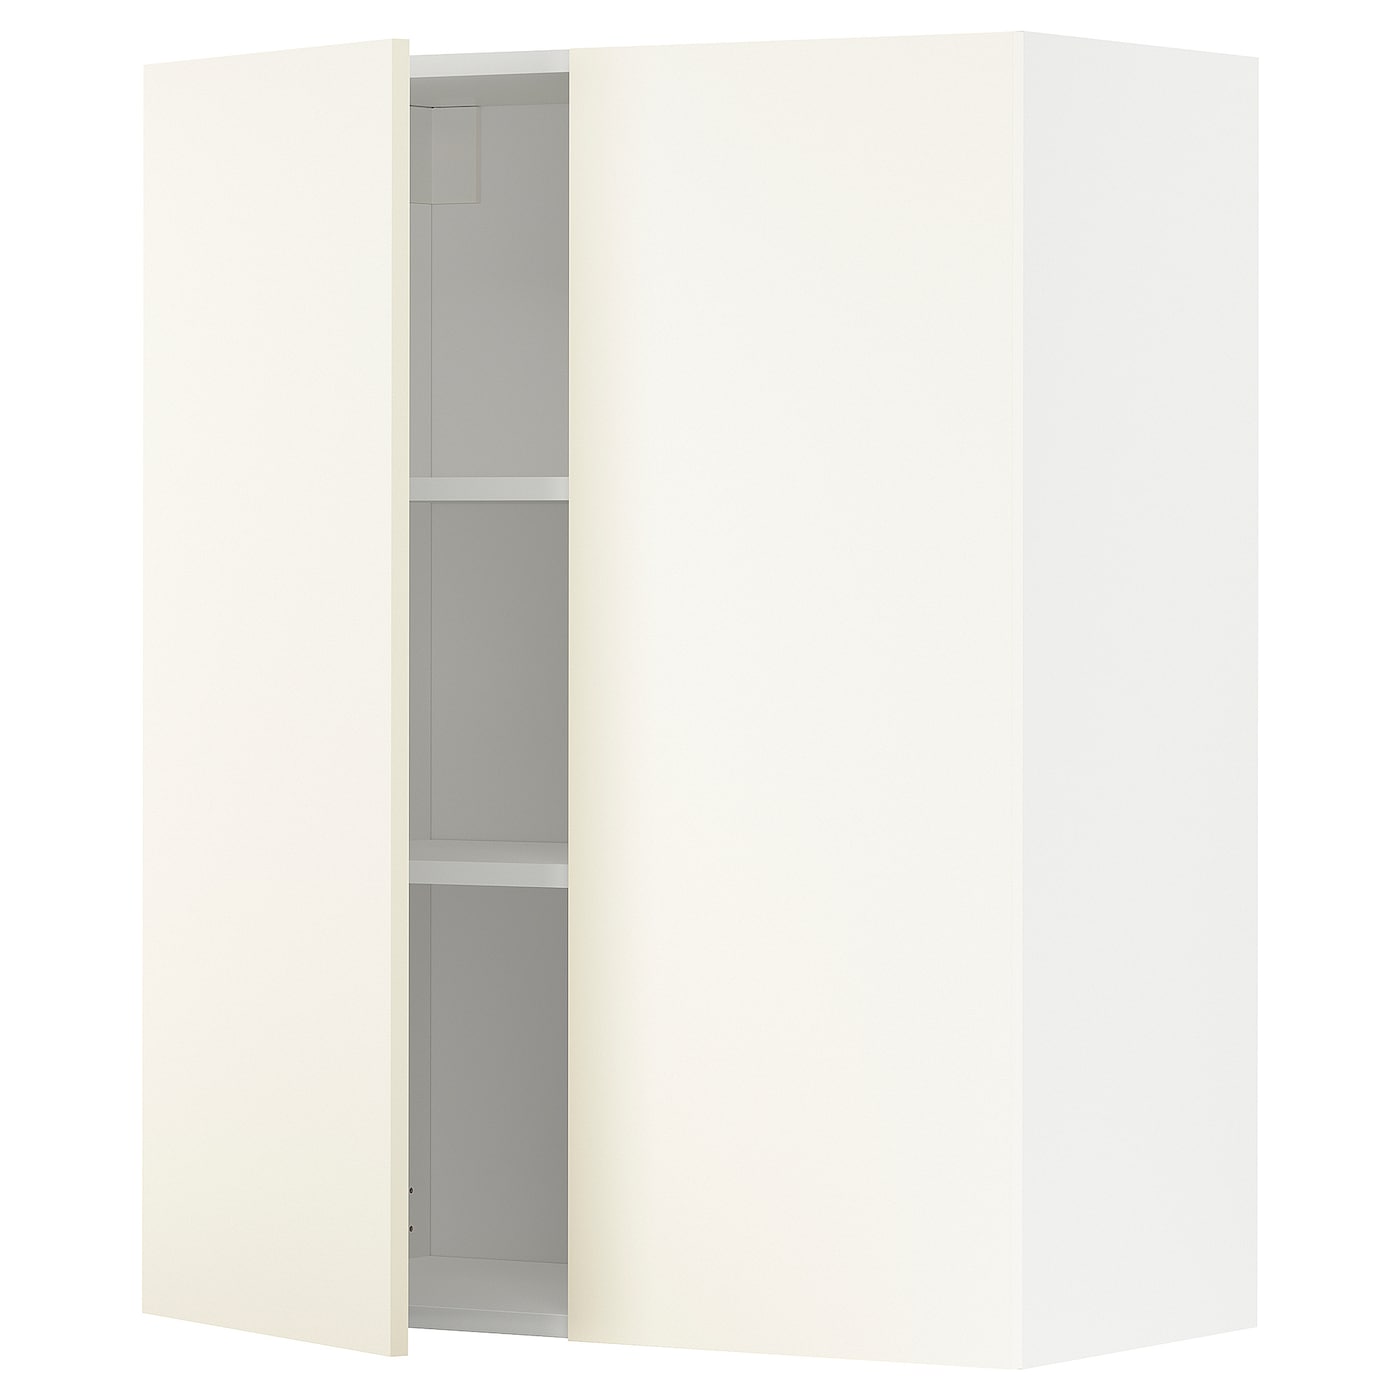 Навесной шкаф с полкой - METOD IKEA/ МЕТОД ИКЕА, 100х80см, белый/кремовый